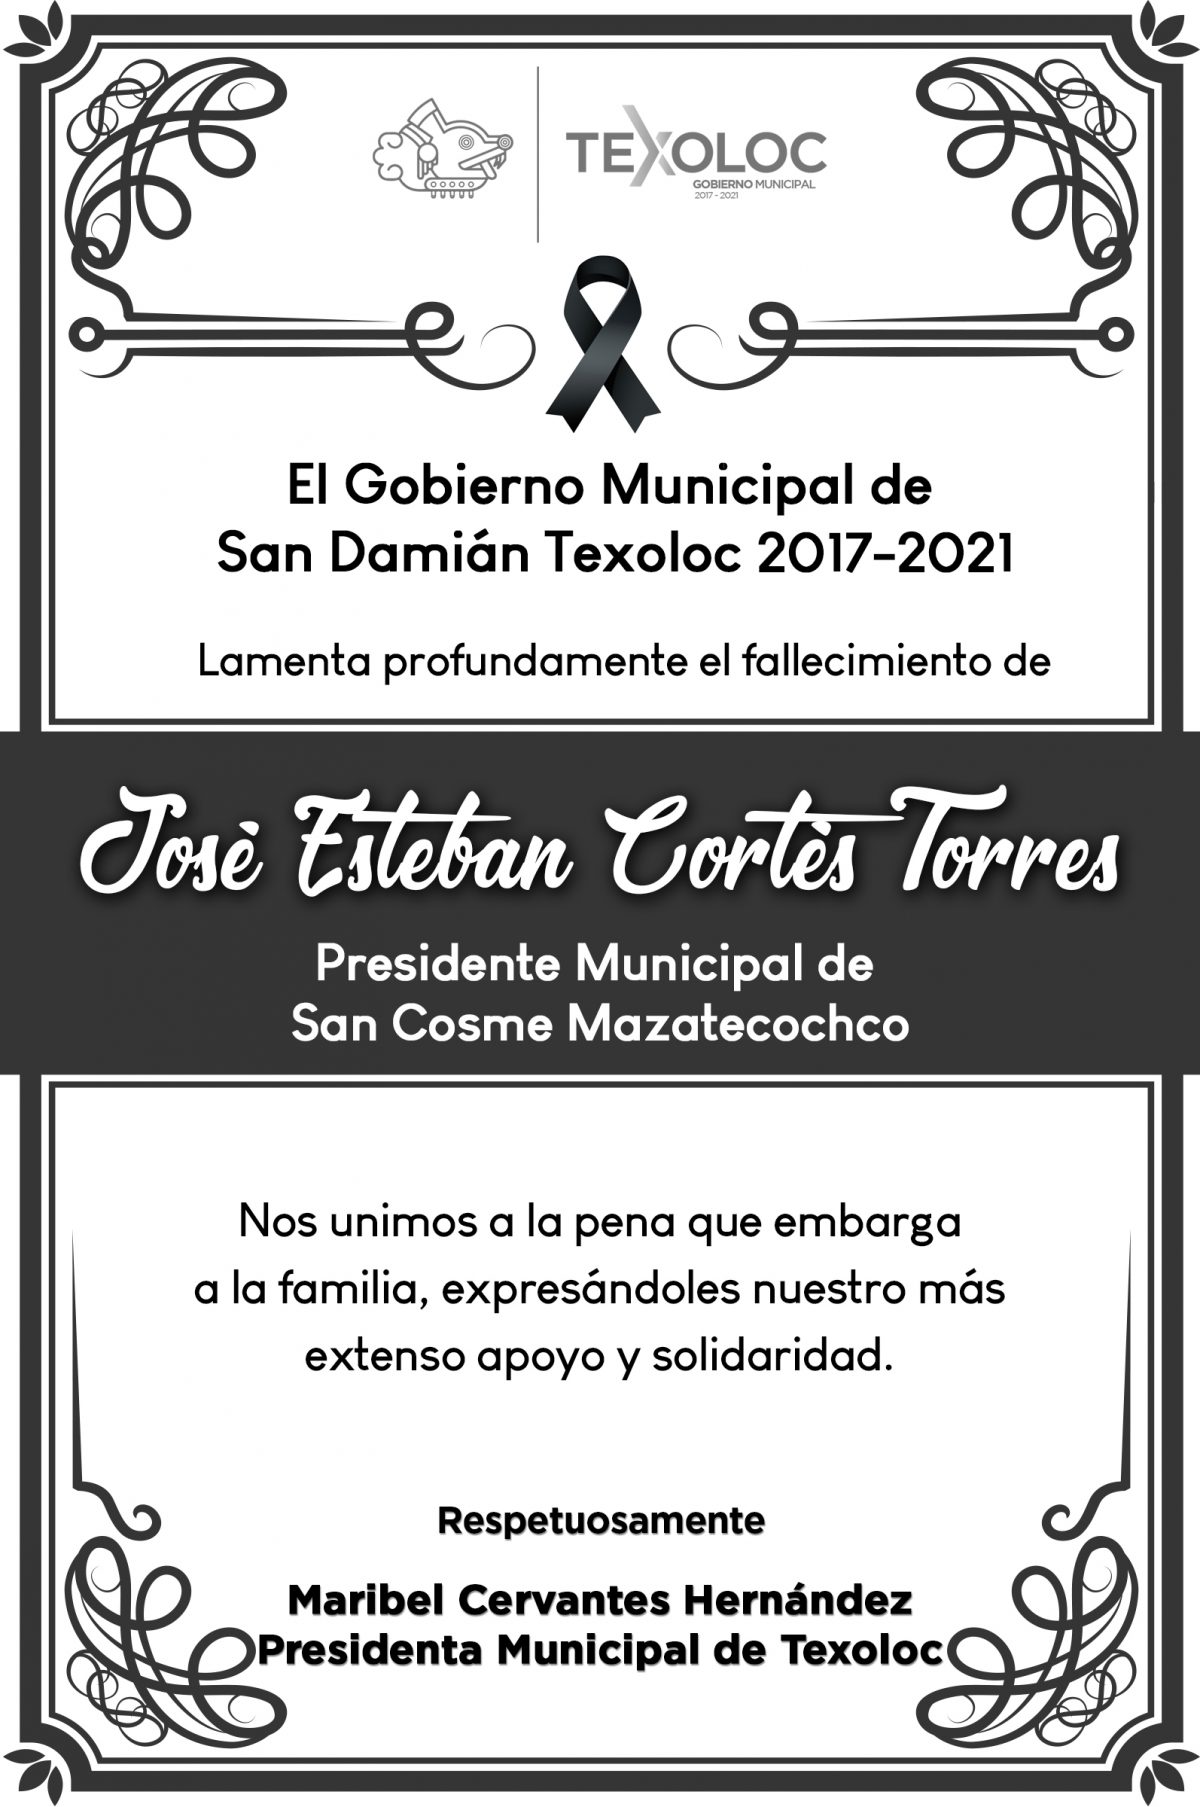 El gobierno Municipal de San Damián Texoloc lamenta el fallecimiento de José Esteban Cortés Tórrez